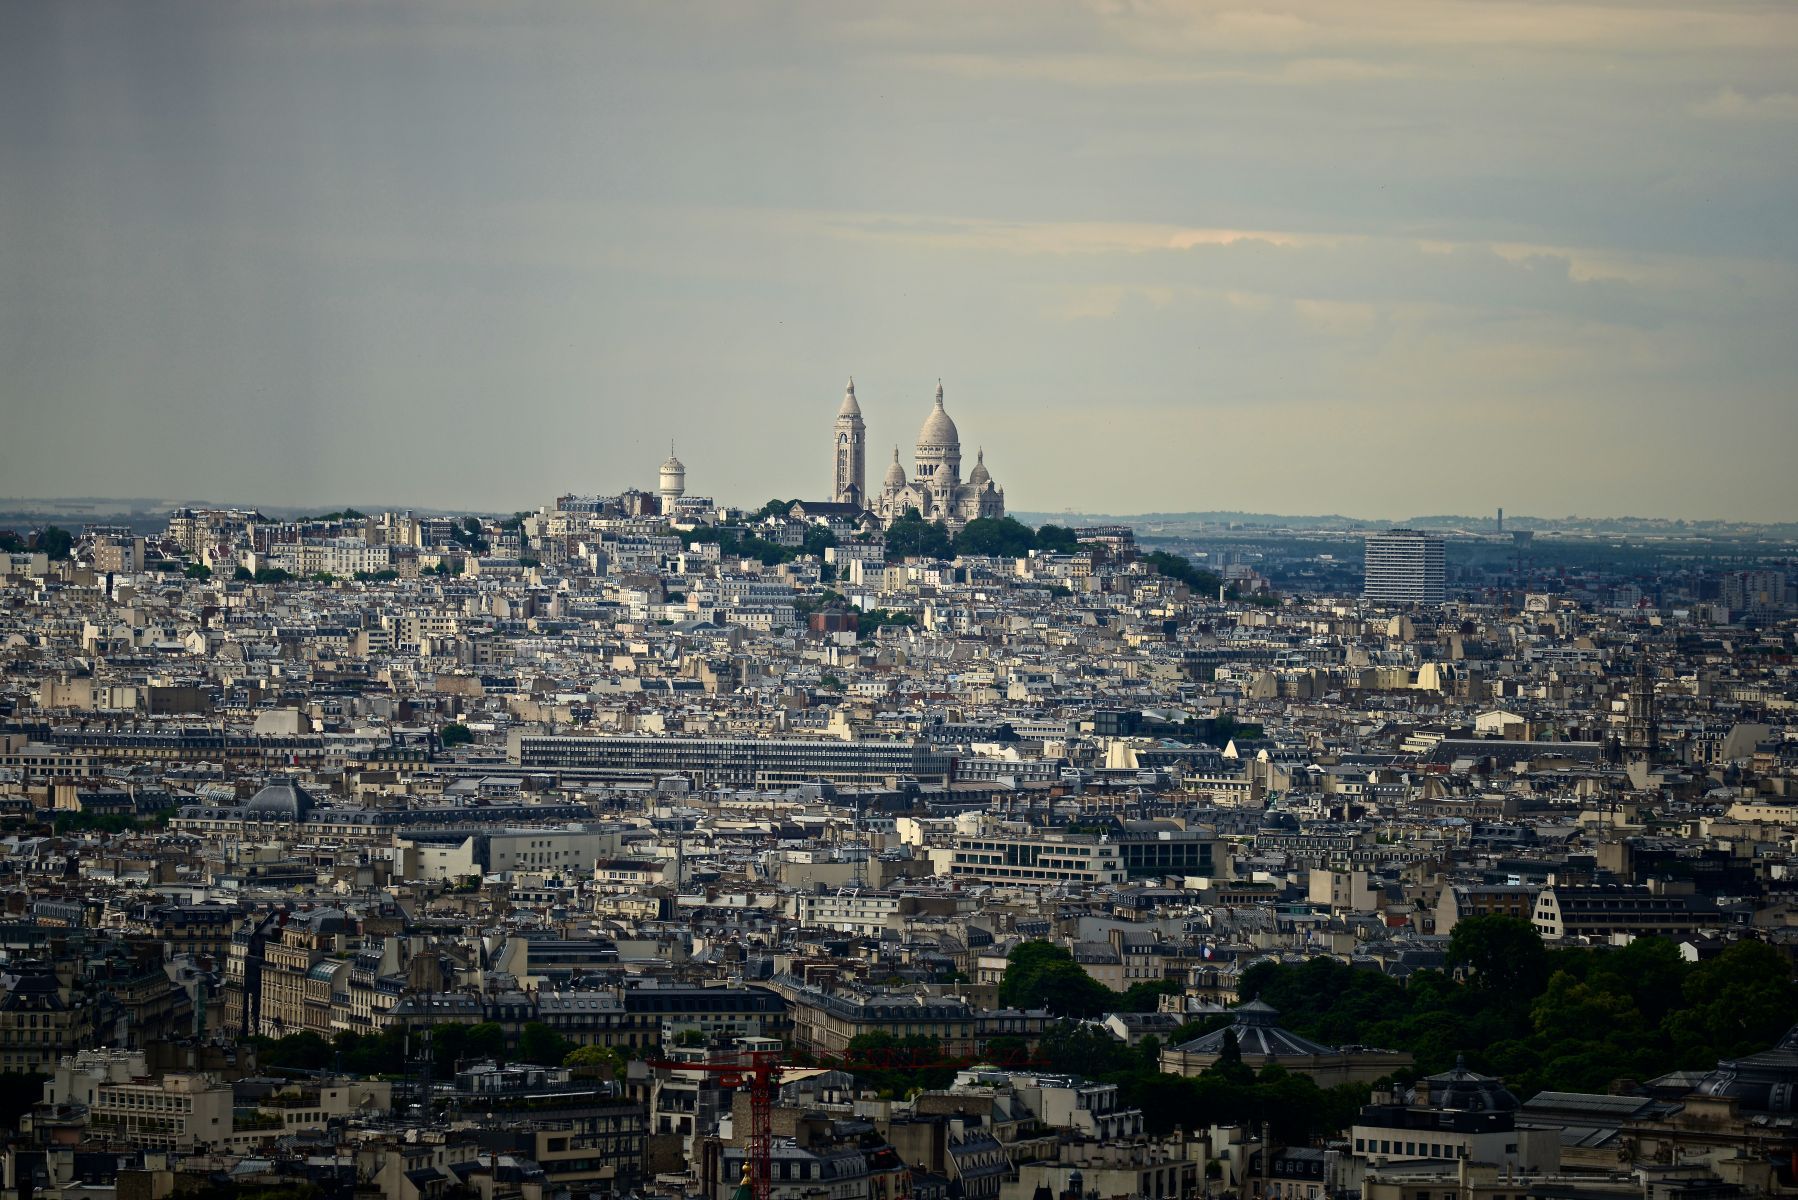 "Montmartre"